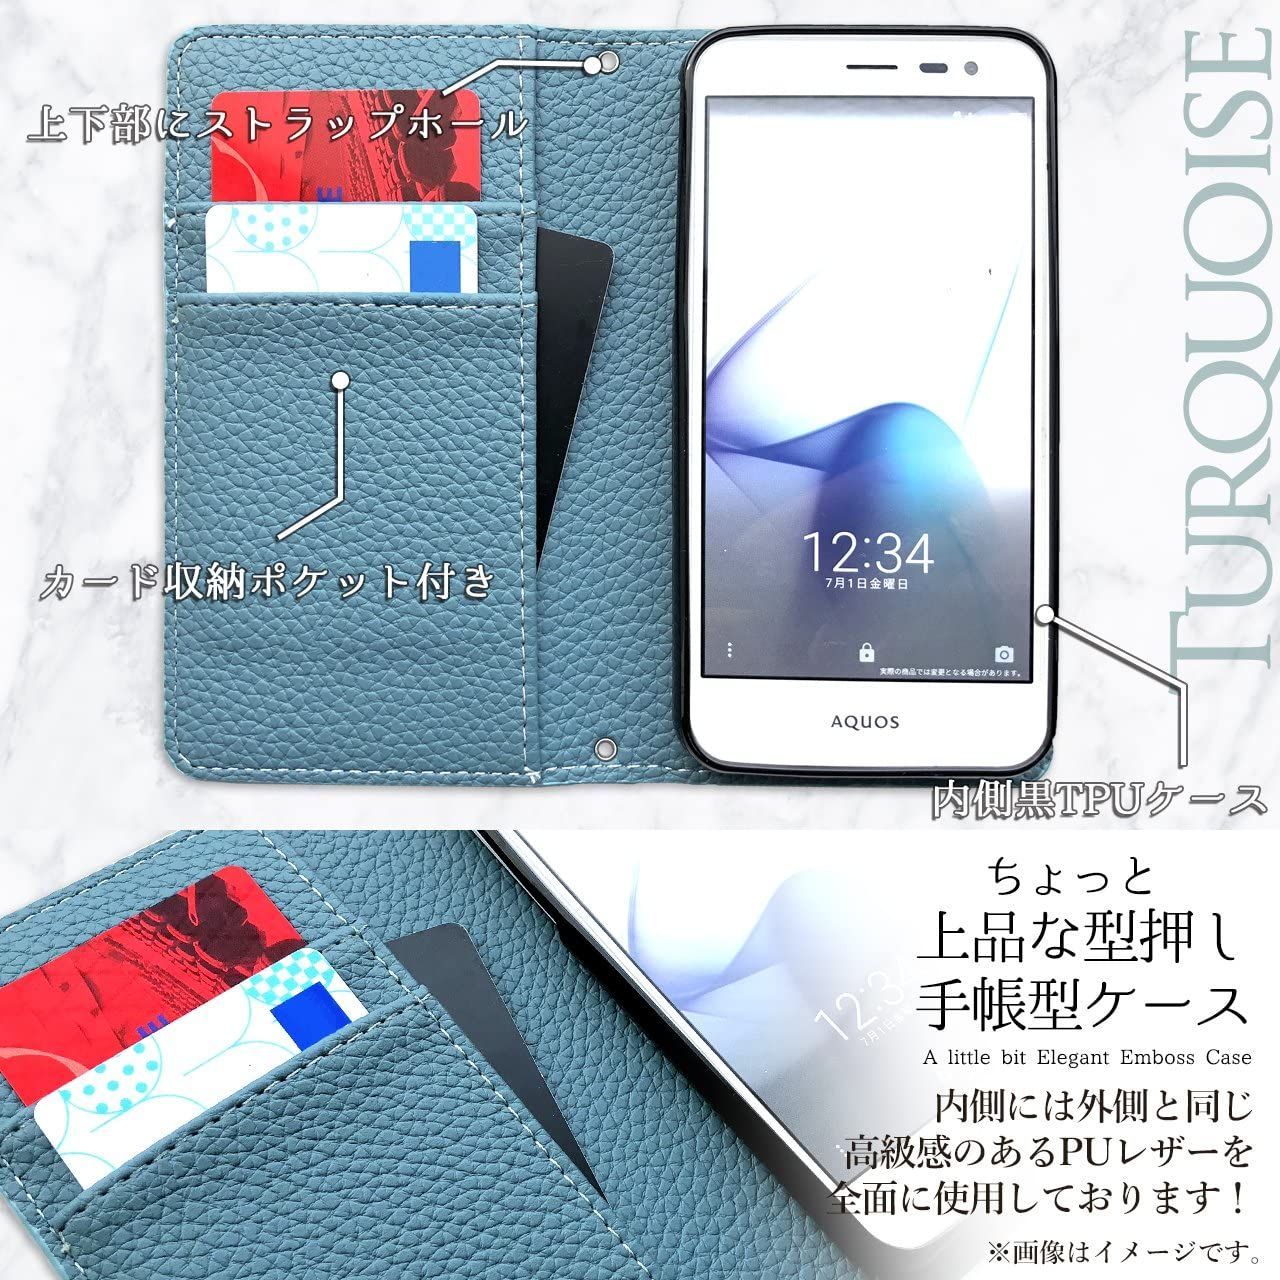 【人気即納】AQUOS SH-M04 White 16 GB UQ mobile スマートフォン本体